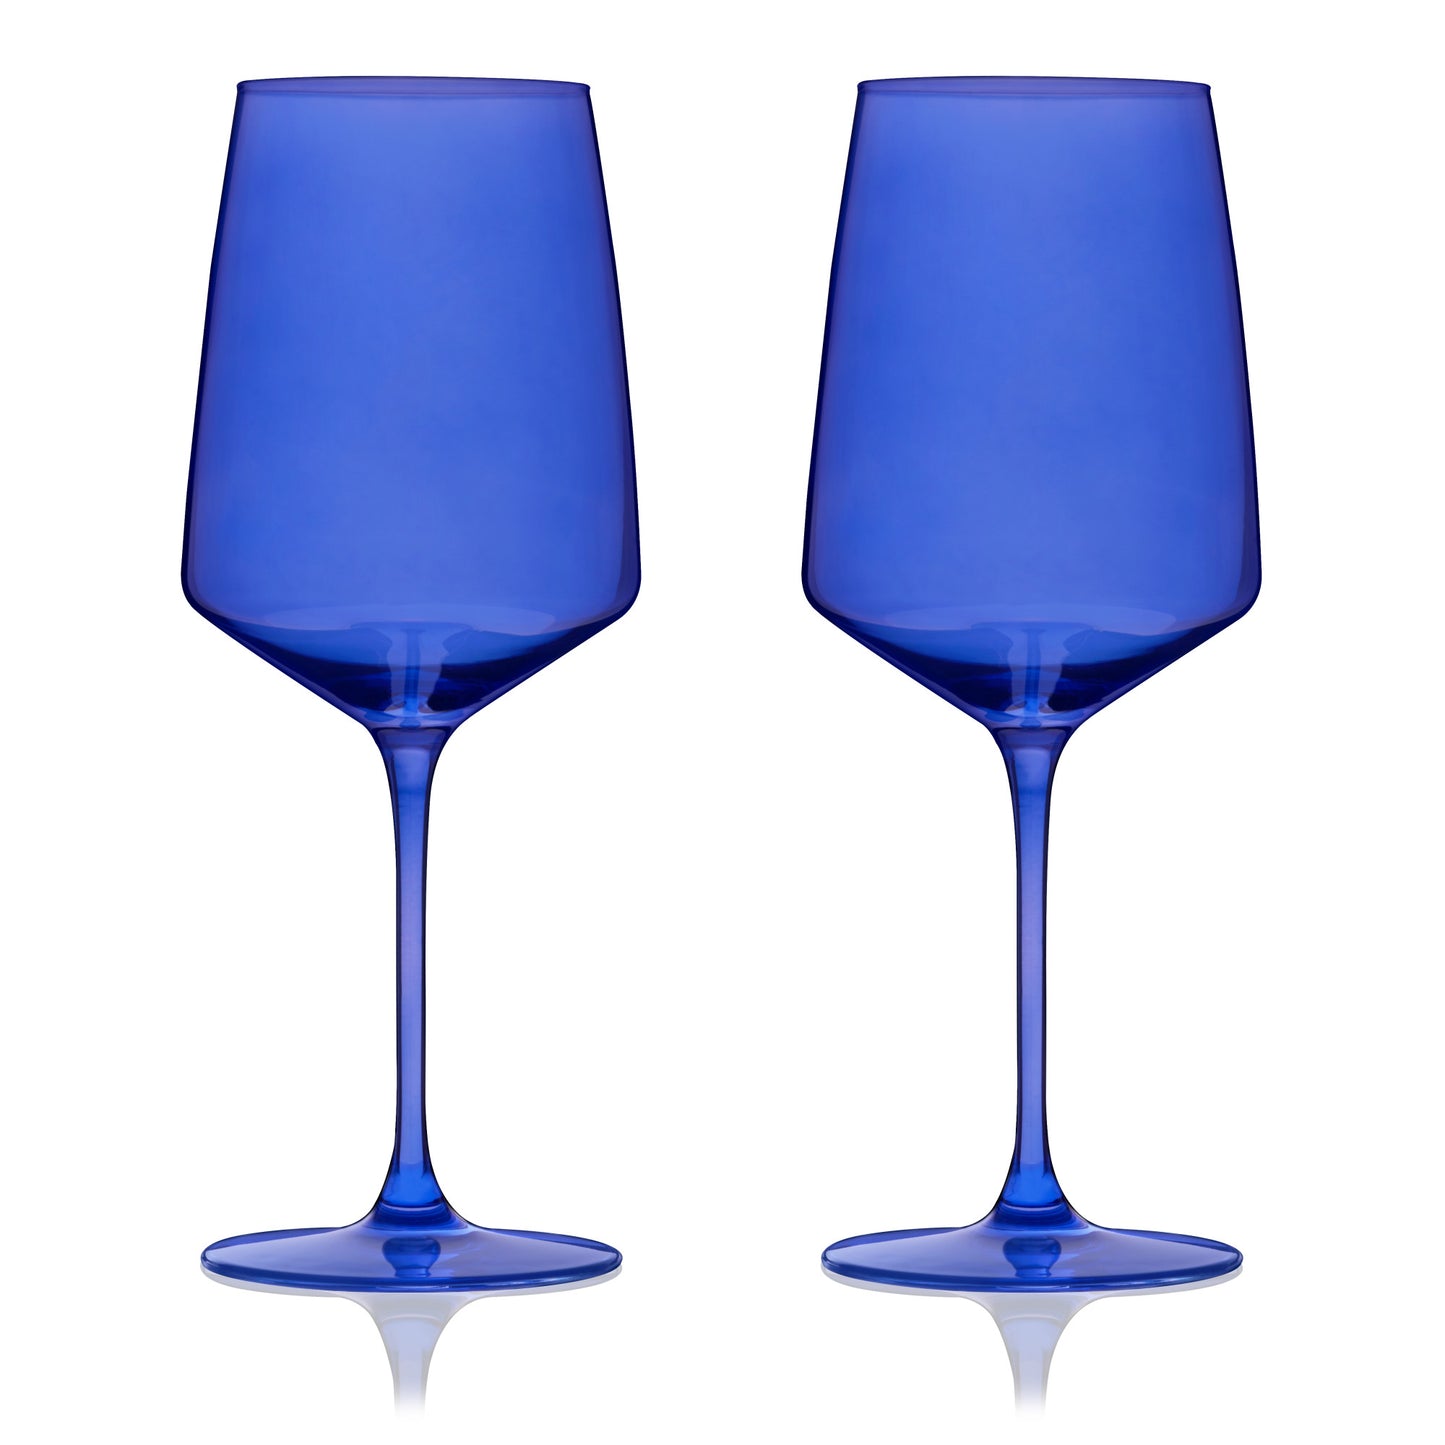 Reserve Nouveau Crystal Wine Glasses in Cobalt By Viski (set